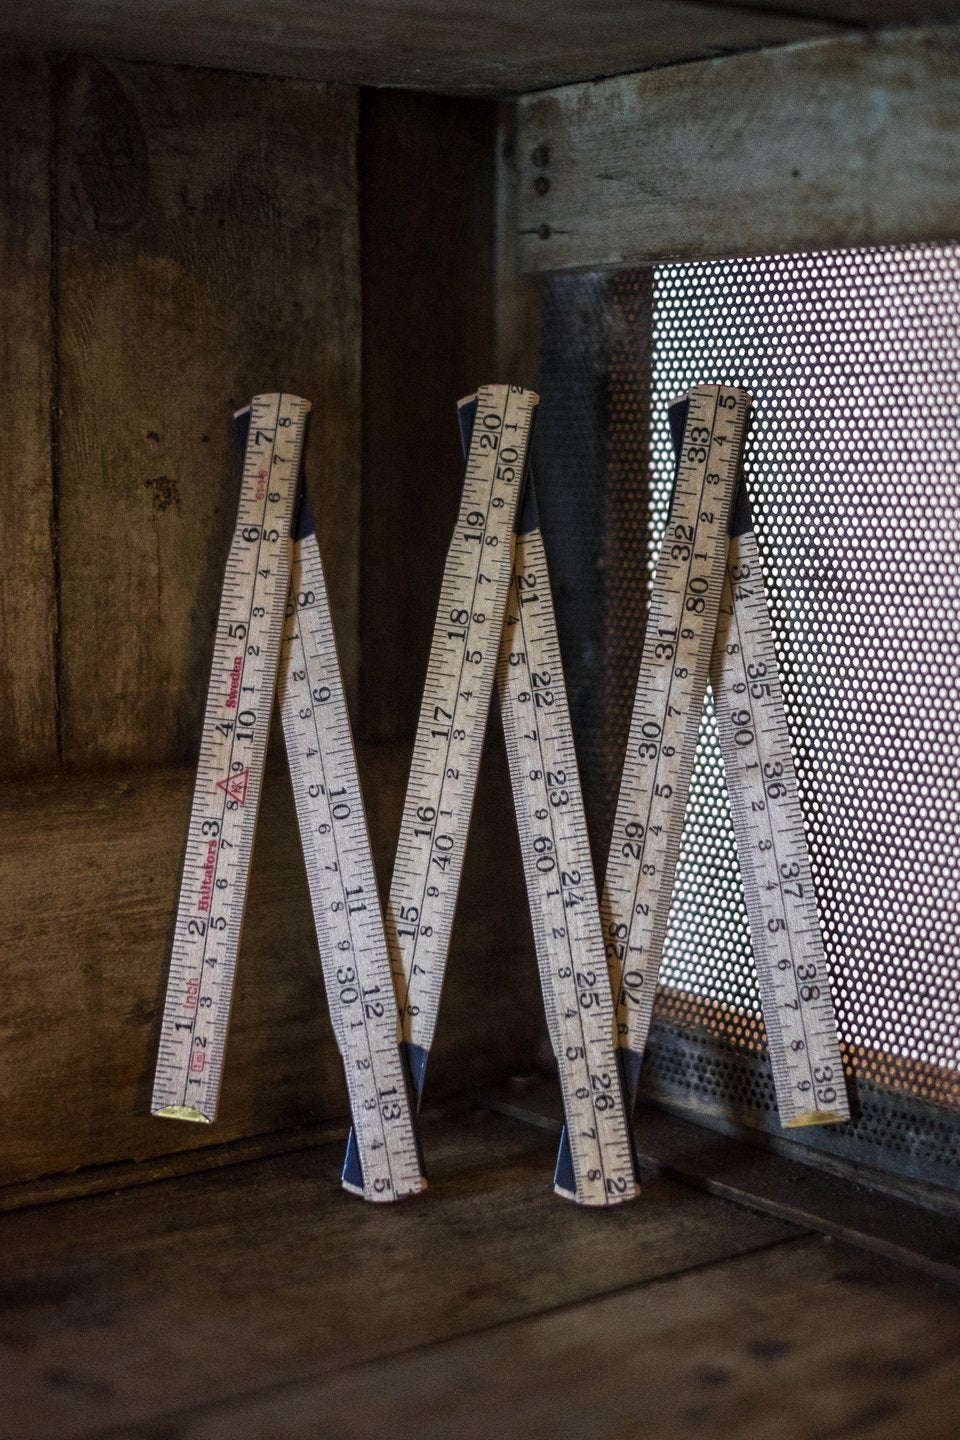 Wooden folding ruler by Merchant & Mills